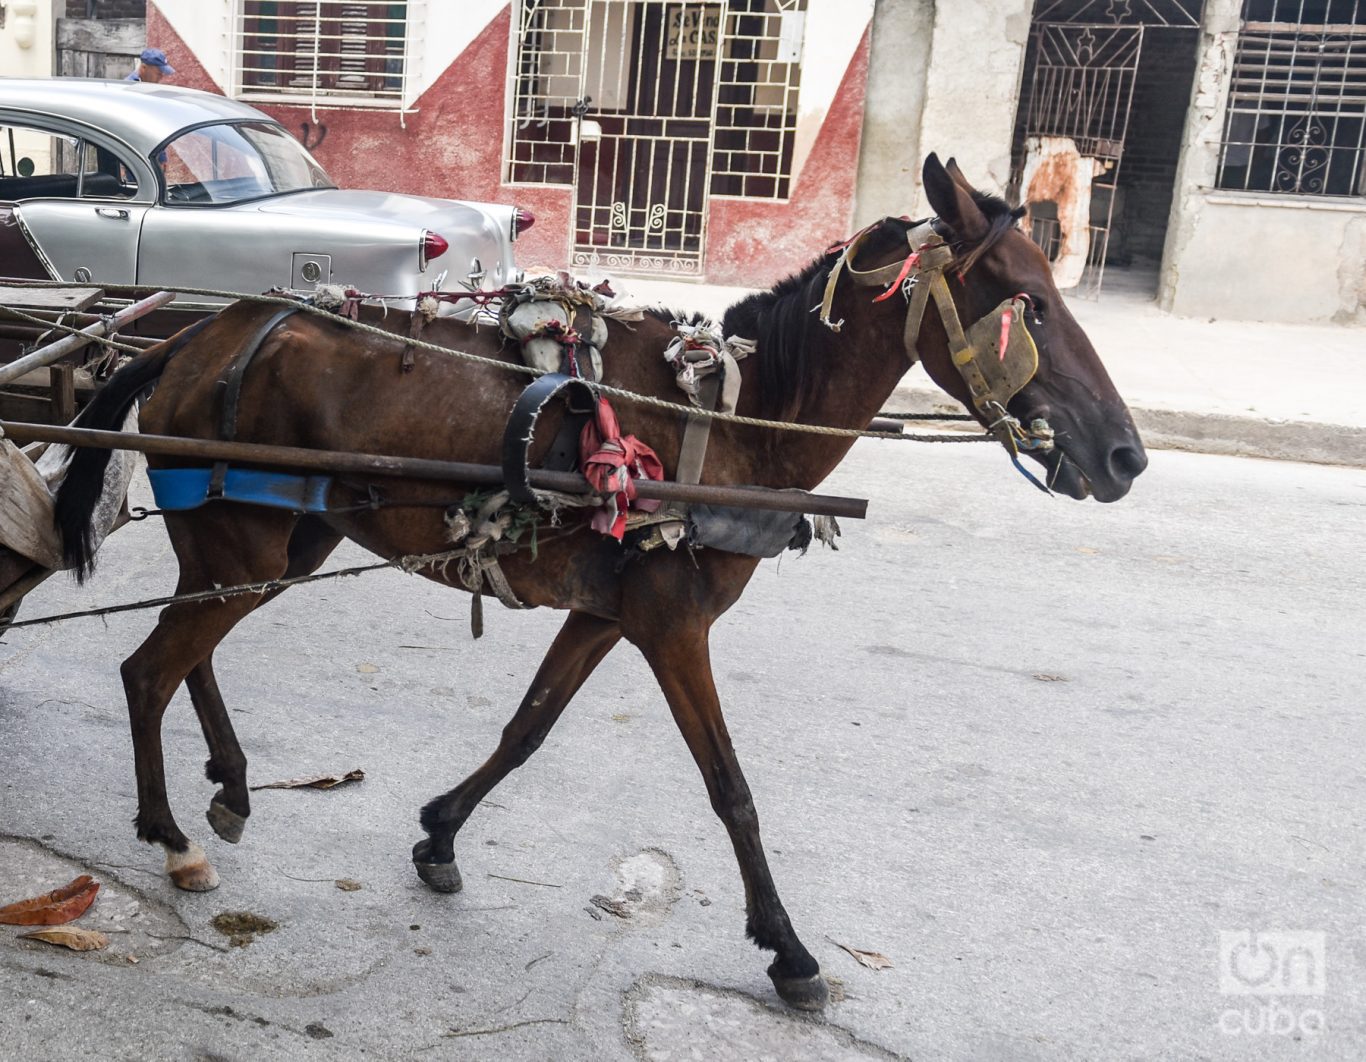 Un caballo desnutrido y con arreos improvisados. Foto: Kaloian.
